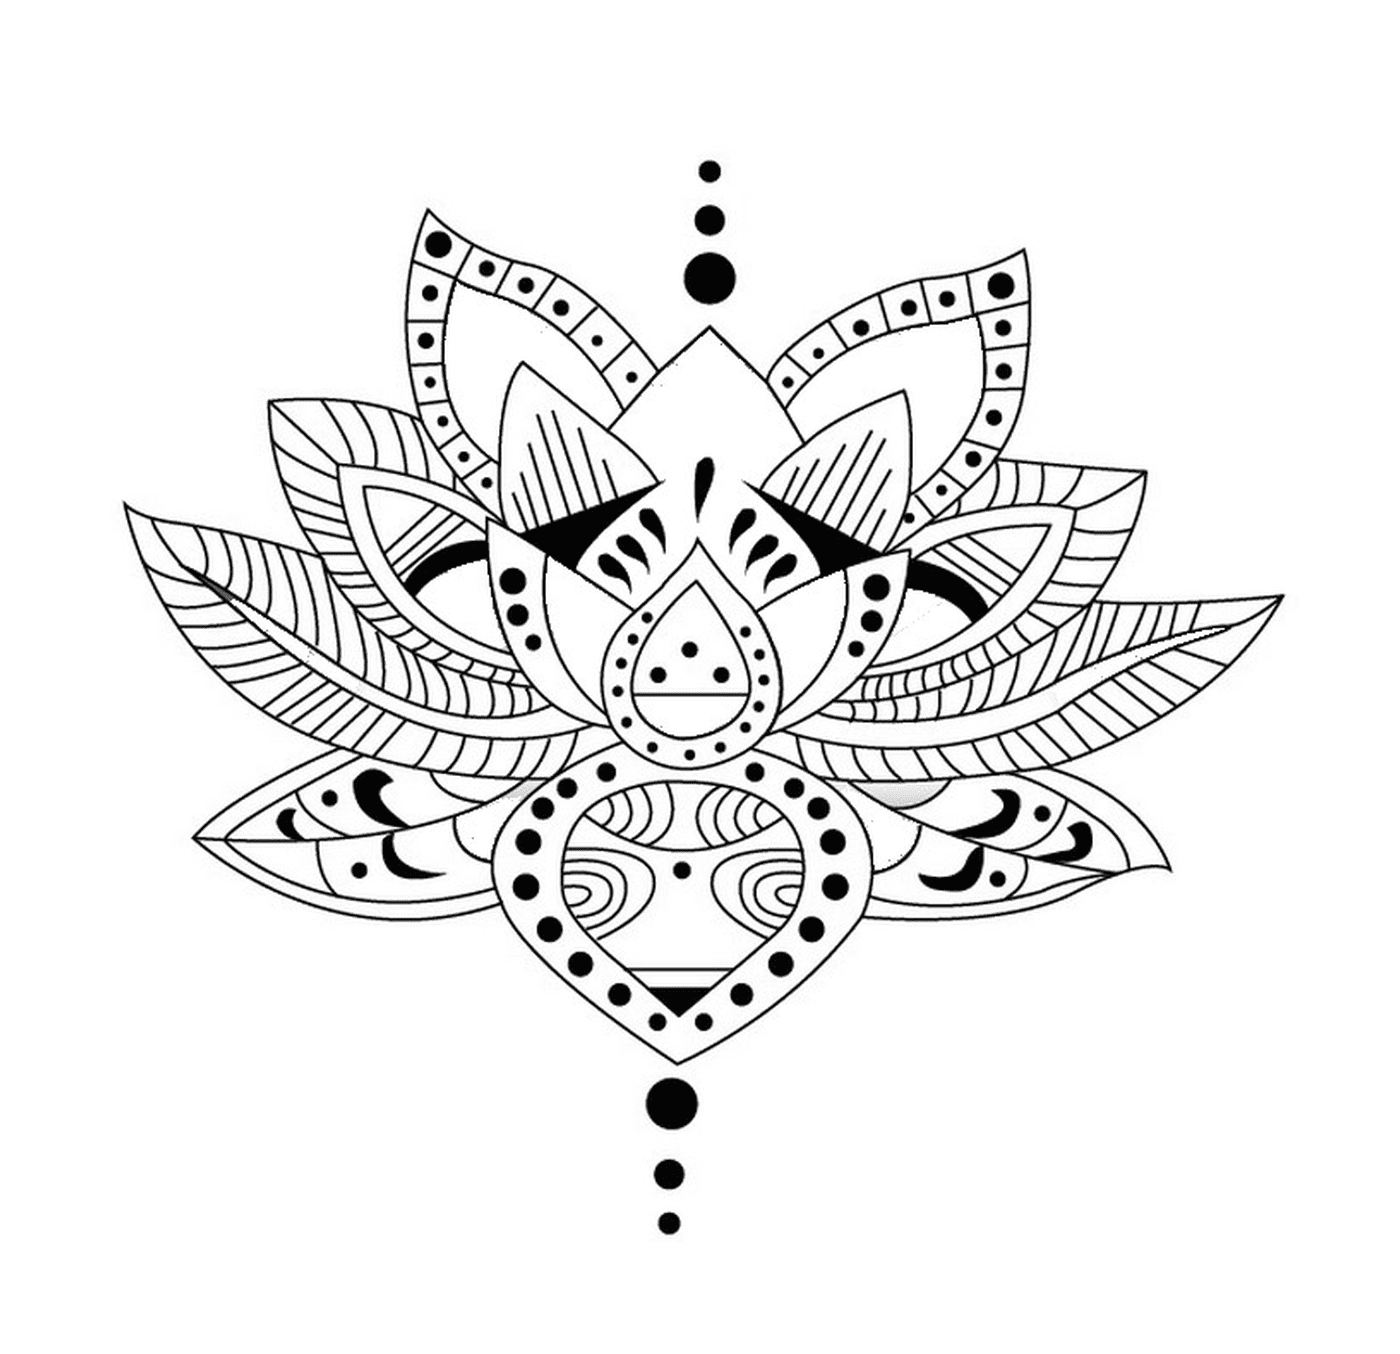  Una flor de loto con puntos 